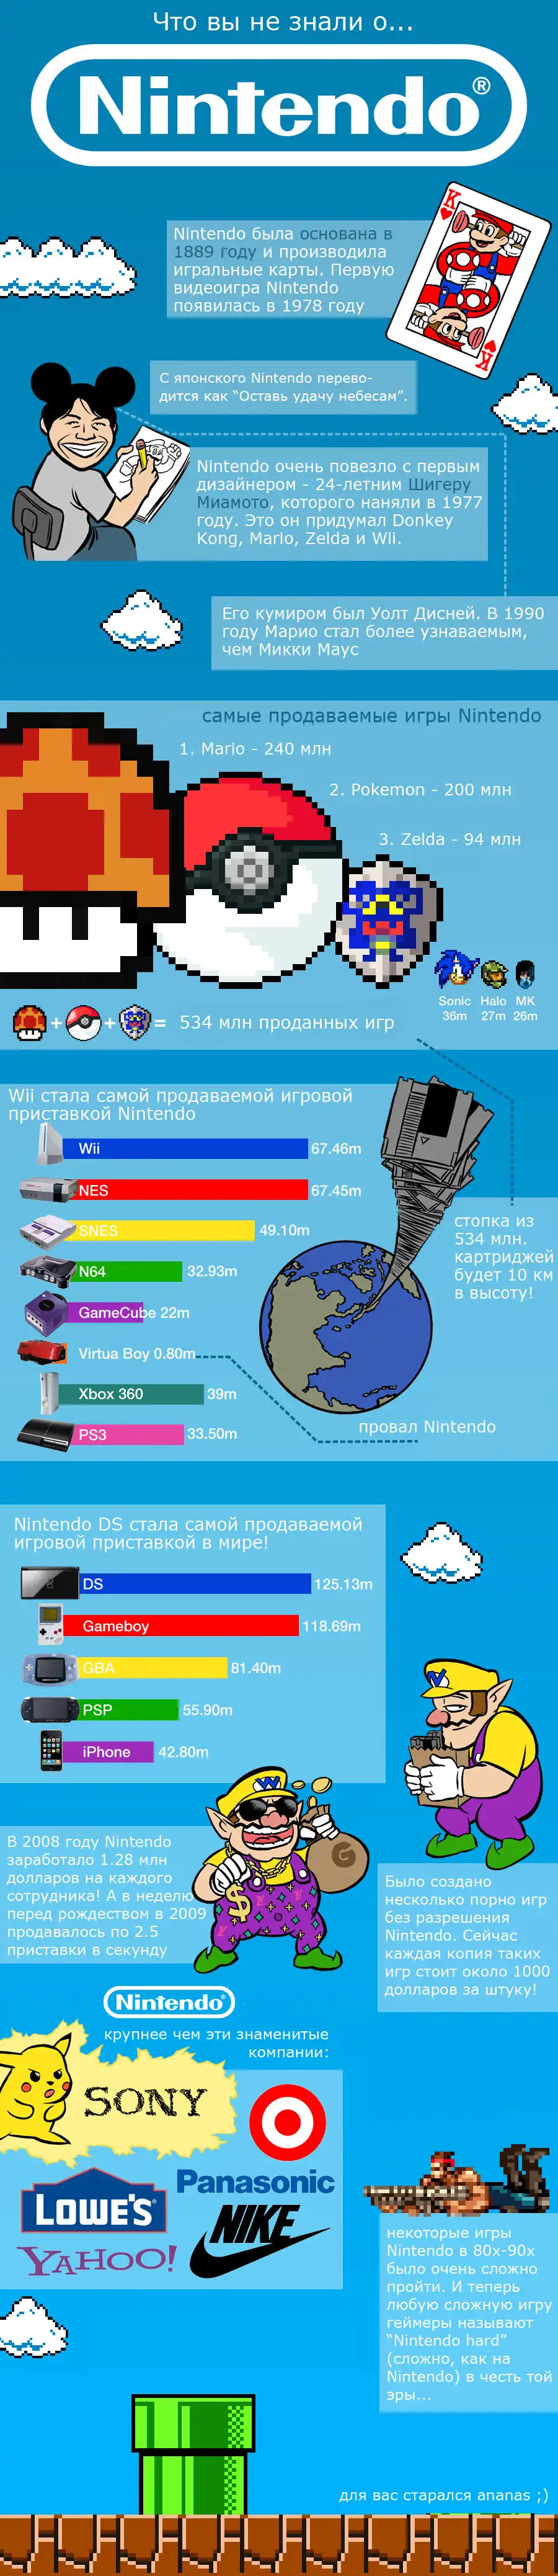 Факты, которые вы не знали о Nintendo